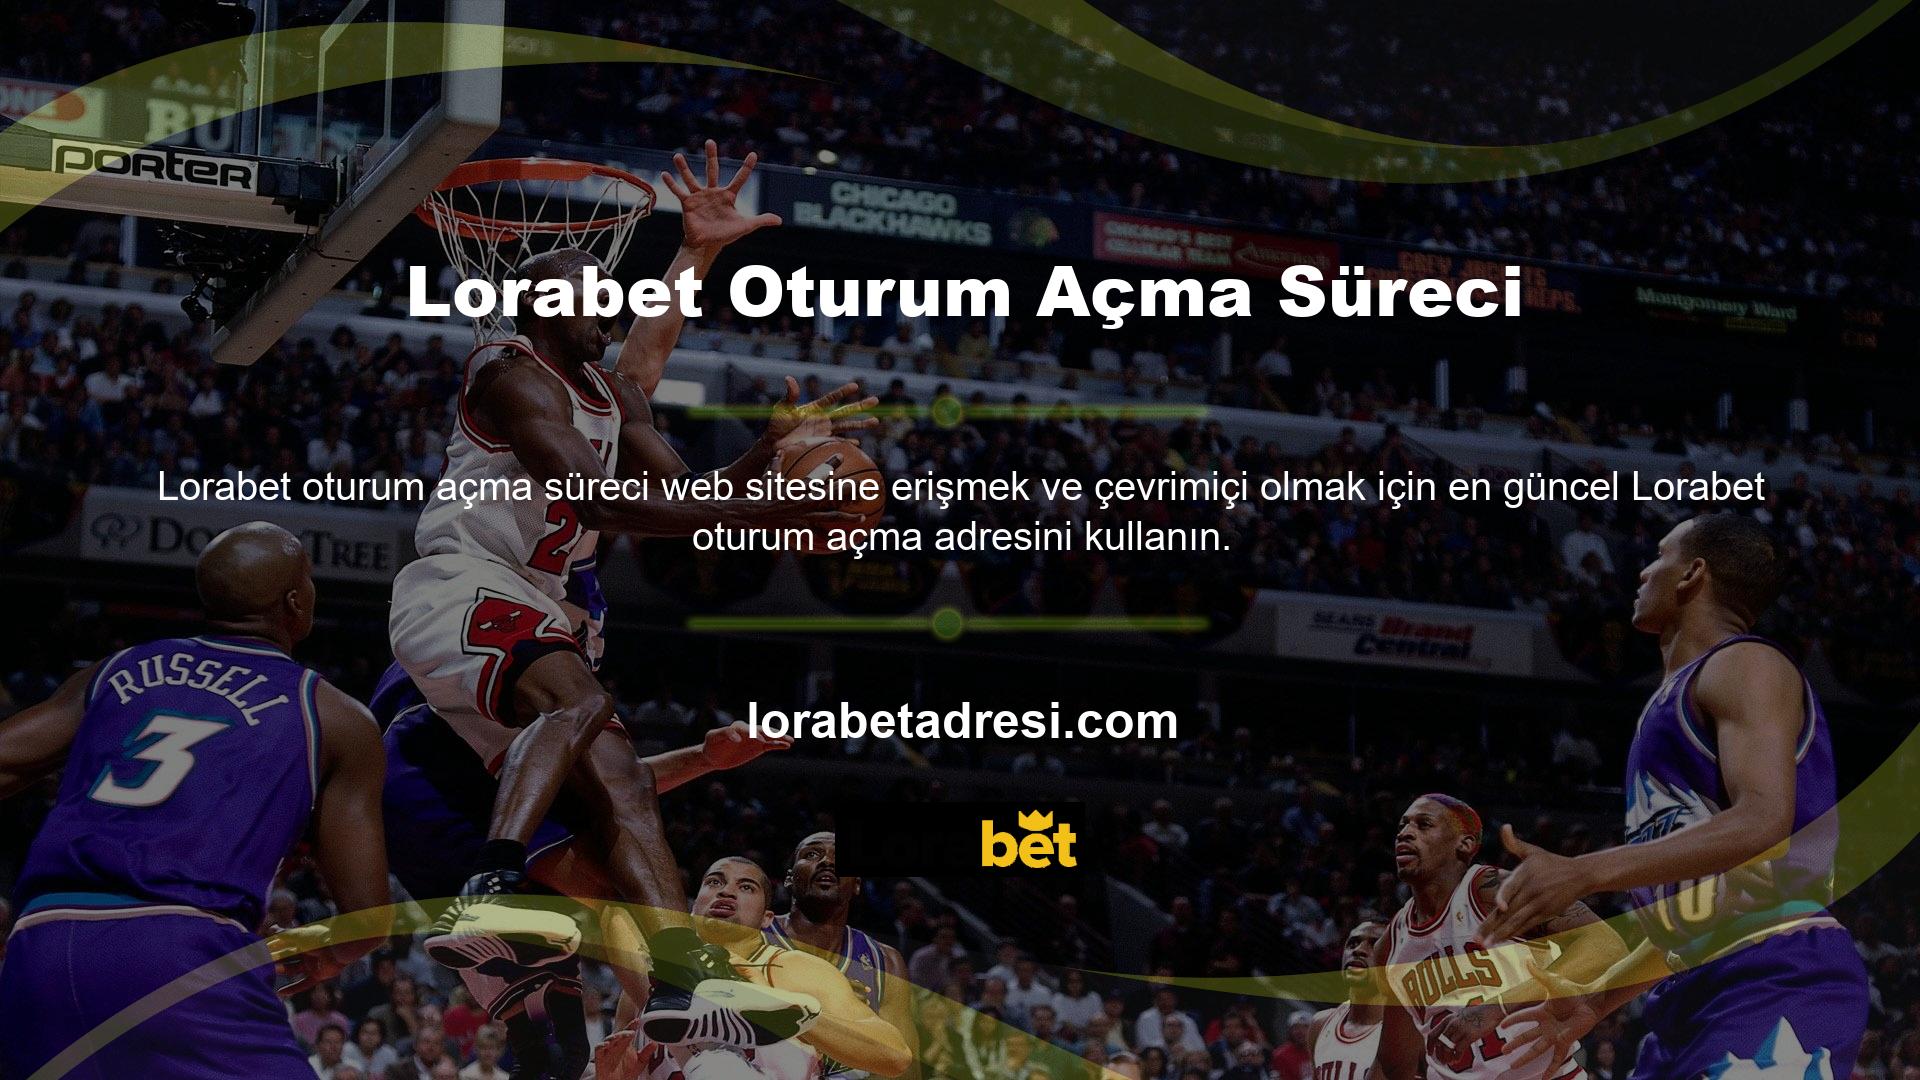 Lorabet resmi sitesine erişim her zaman açılacak bir tarayıcı aracılığıyla sağlanır